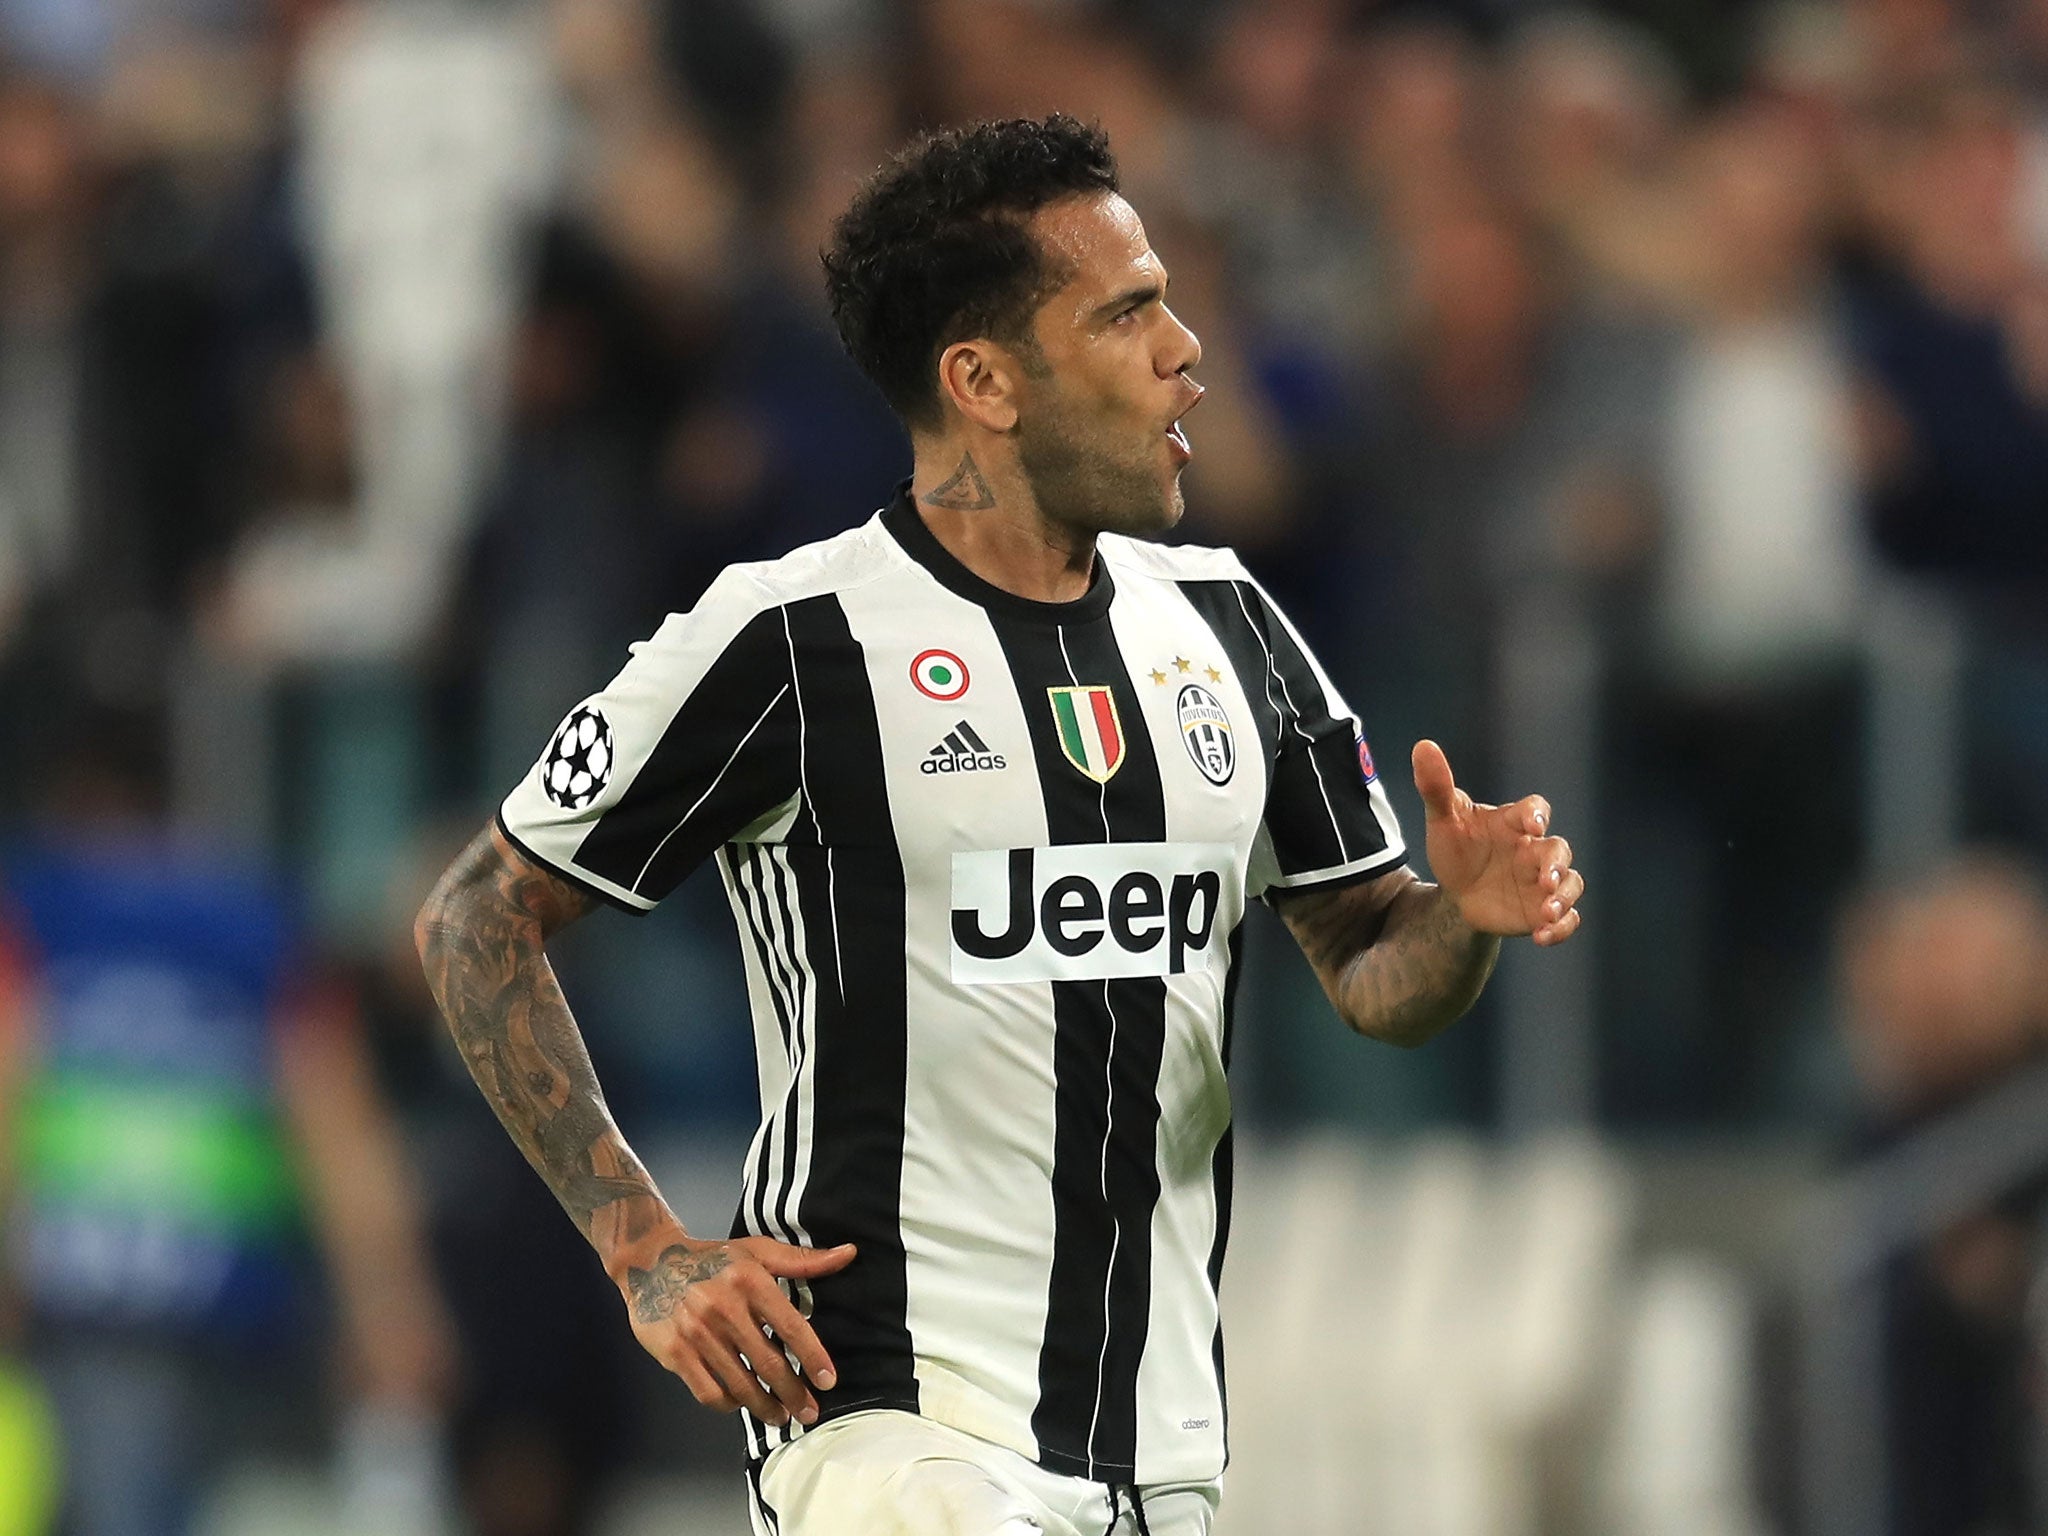 Dani Alves scored Juventus' second